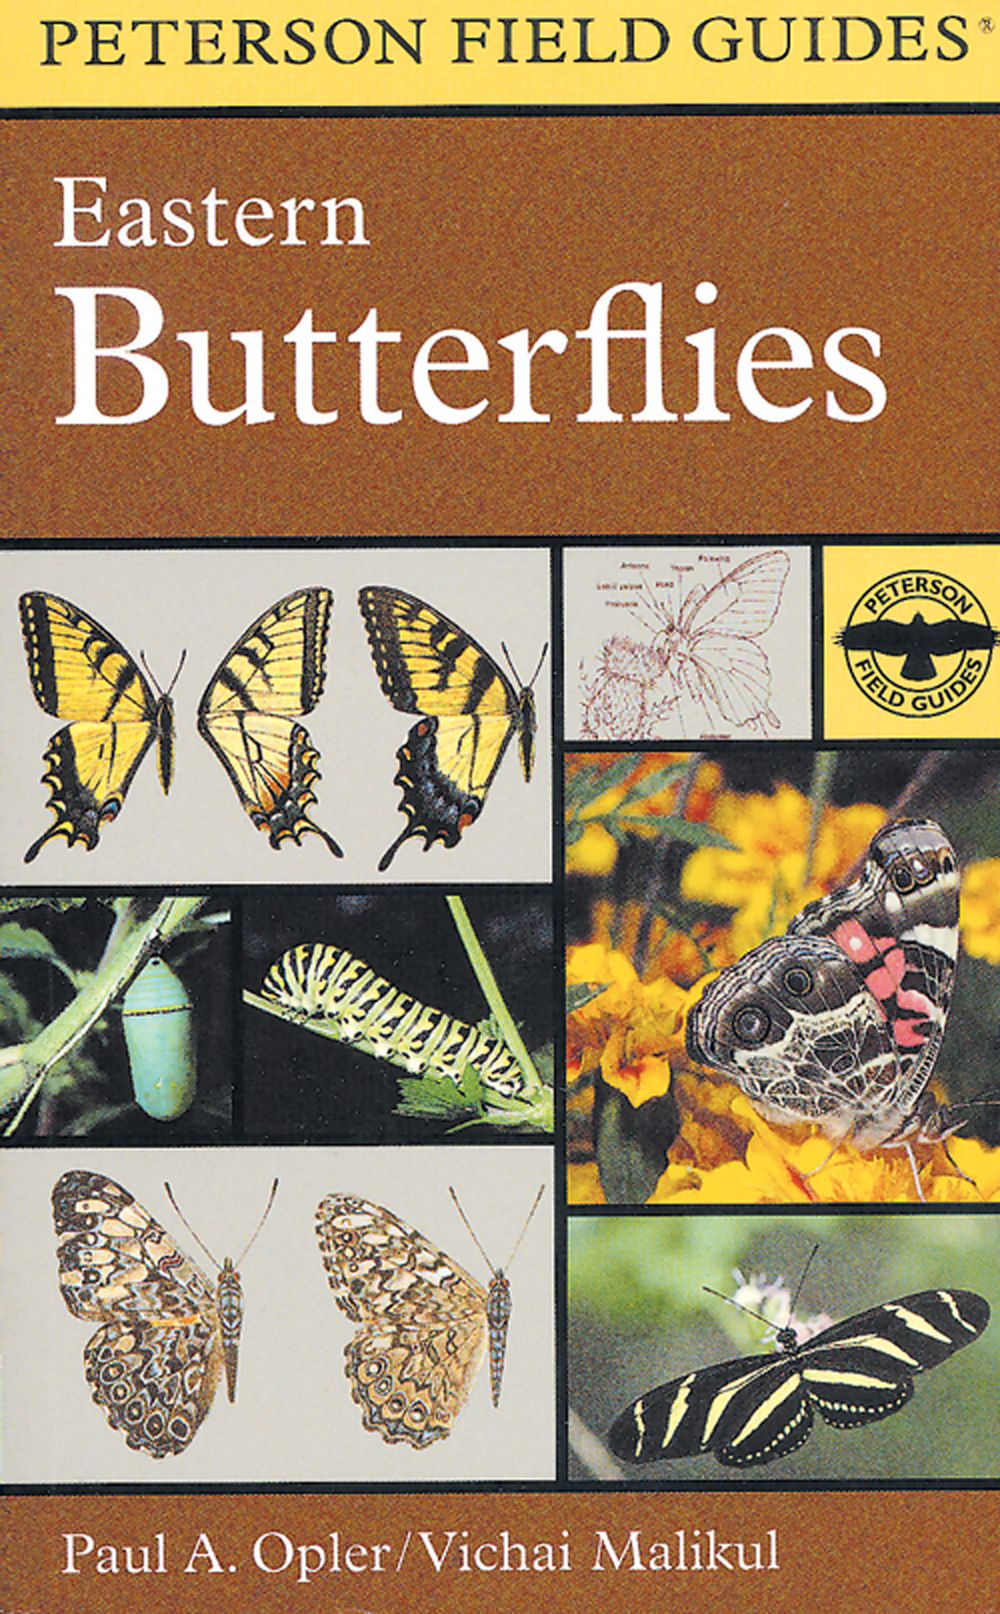 Peterson Field Guide to Eastern Butterflies